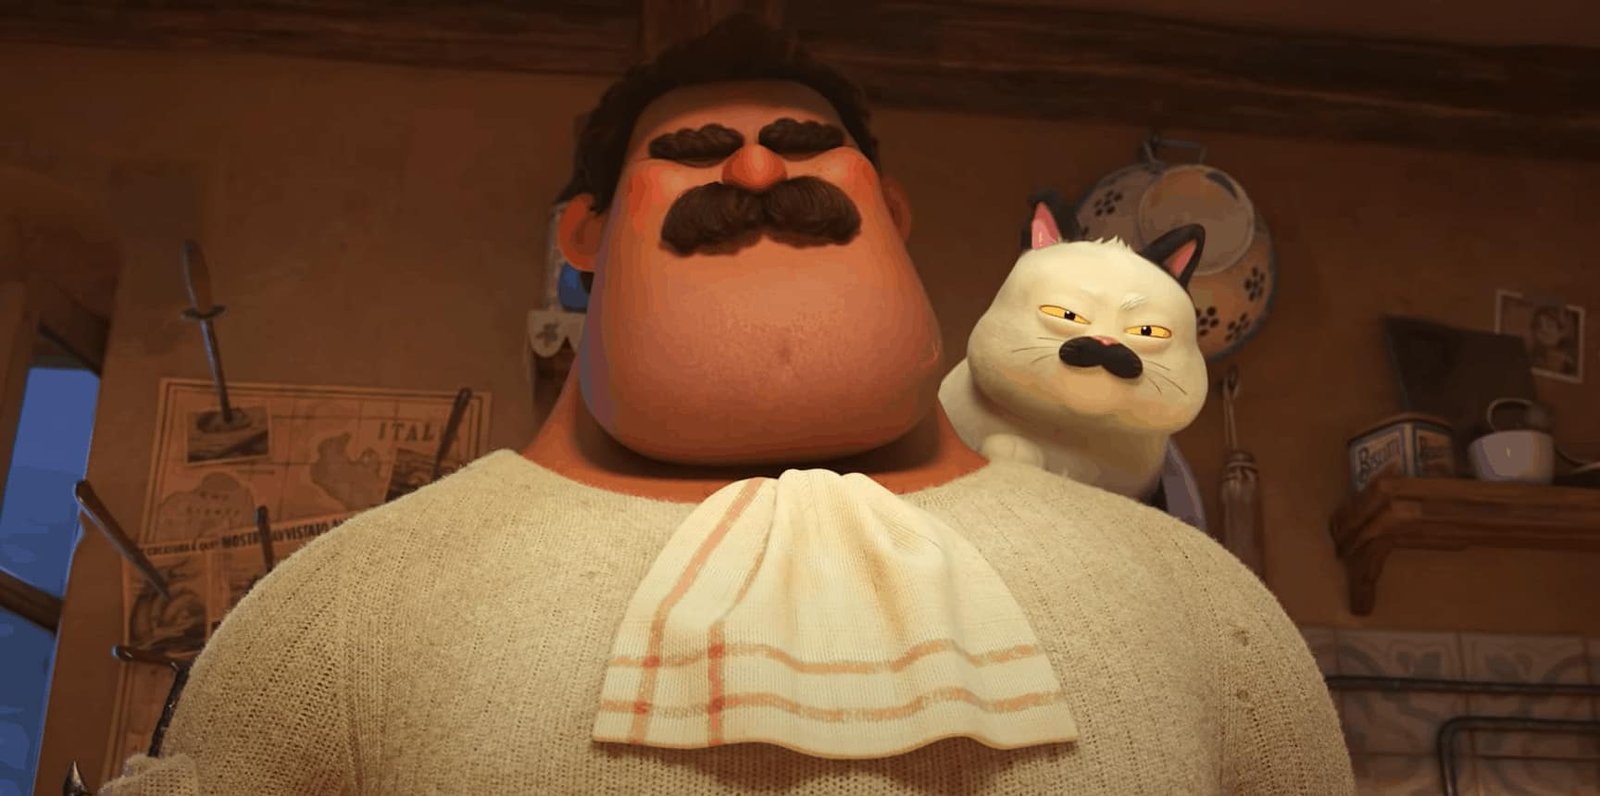 Une image animée représentant un grand homme avec une épaisse moustache portant un pull crème et un chat blanc grincheux assis sur son épaule dans une pièce douillette, rappelant des scènes du film Pixar.